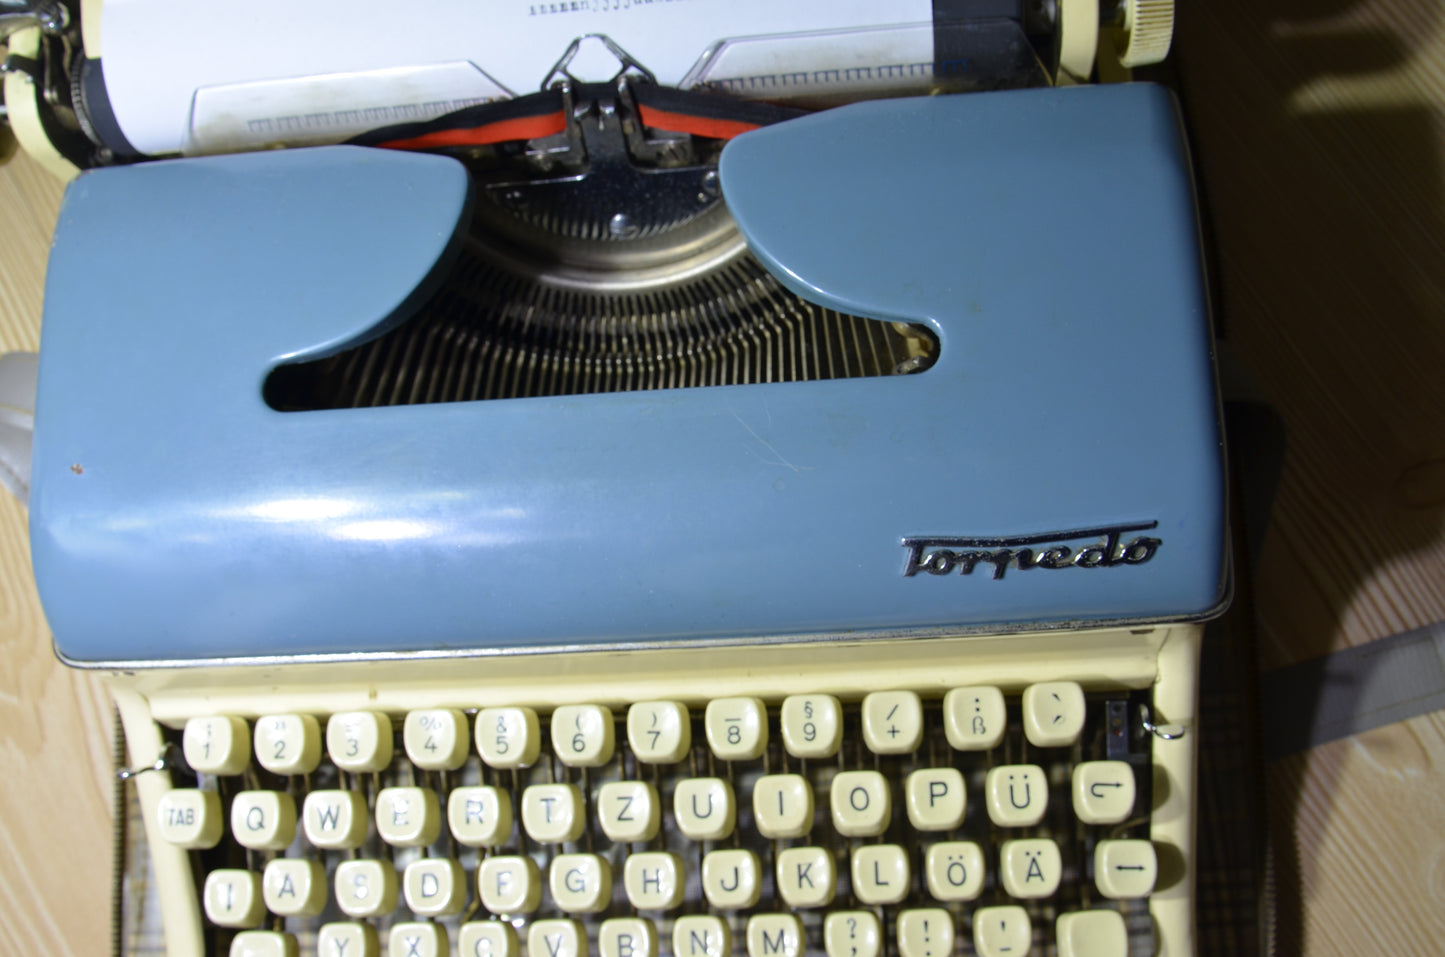 Torpedo Typewriter,Blue and Beige Color Torpedo Typewriter,Orginal Bag Avaible